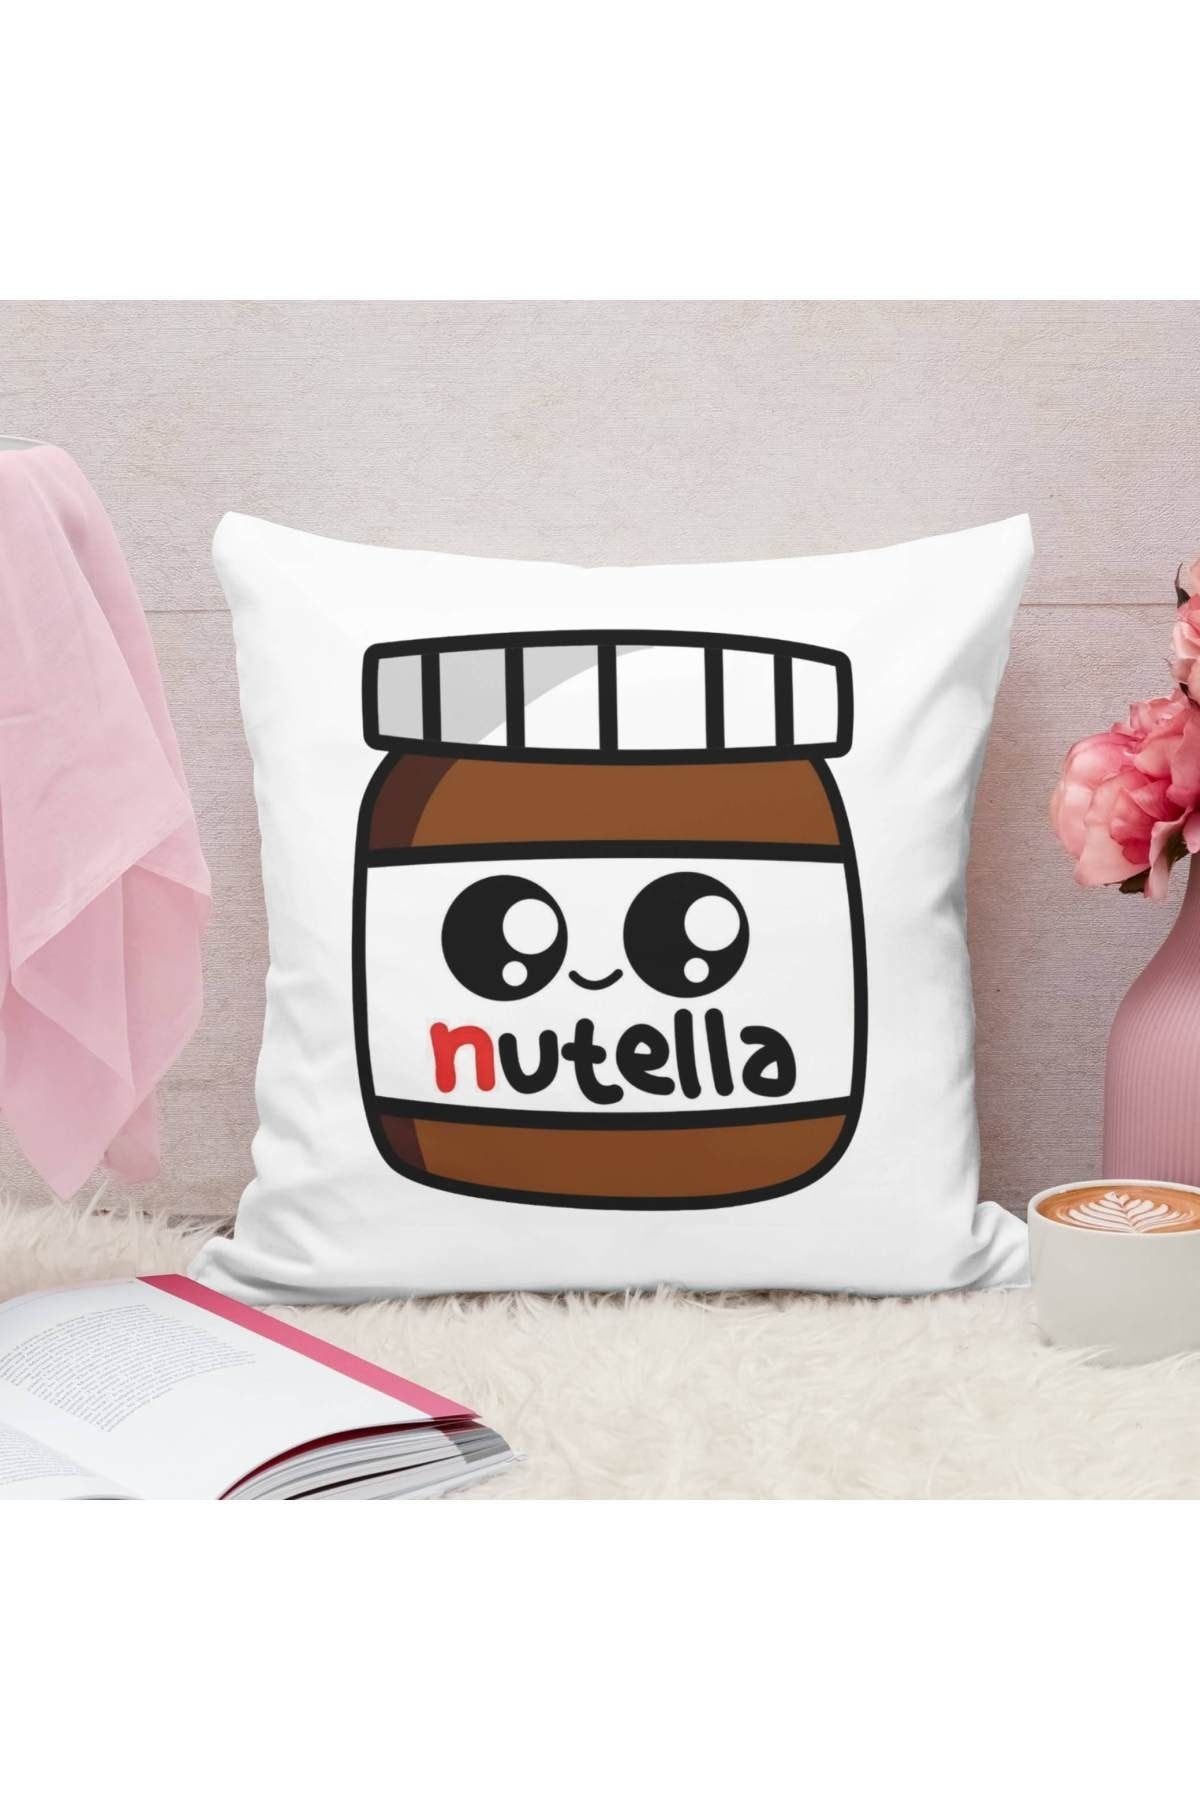 Yastık Deposu Nutella Tasarımlı Baskılı Dekoratif Yastık Hediye